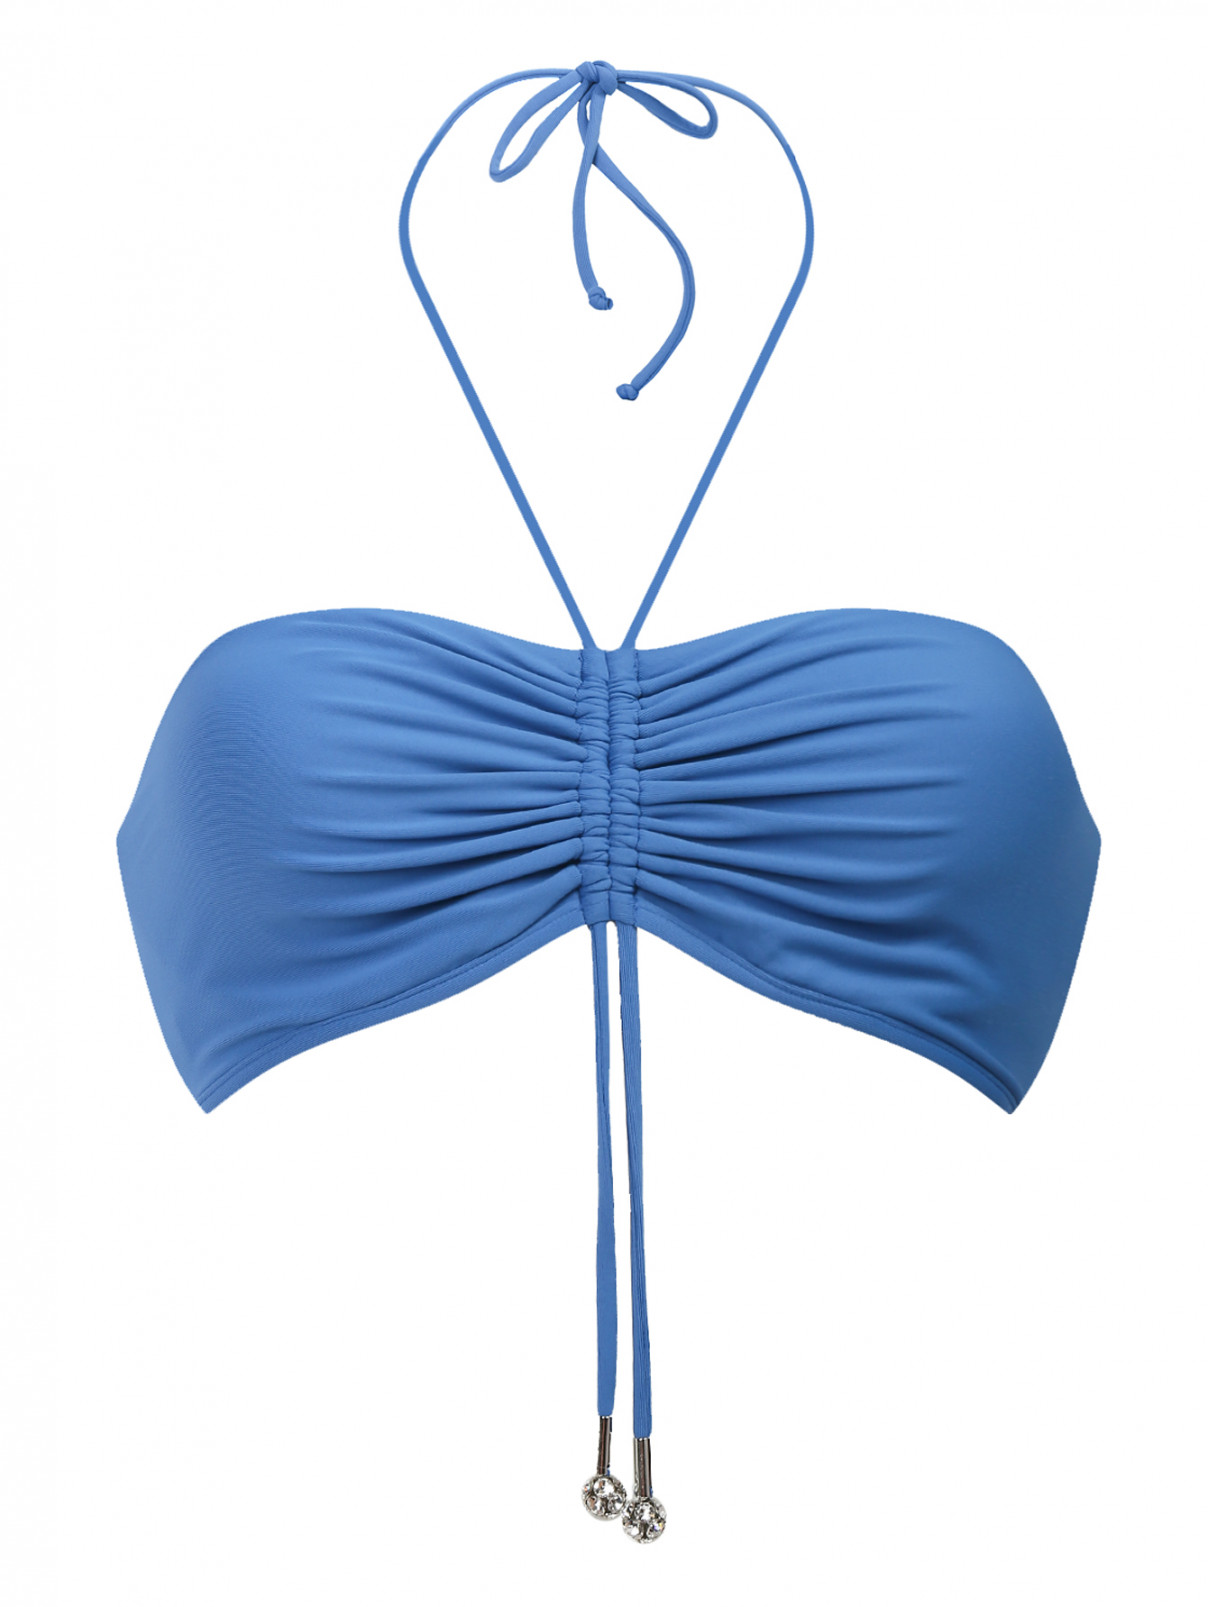 Купальный бюстгальтер-бандо с драпировкой La Perla  –  Общий вид  – Цвет:  Синий